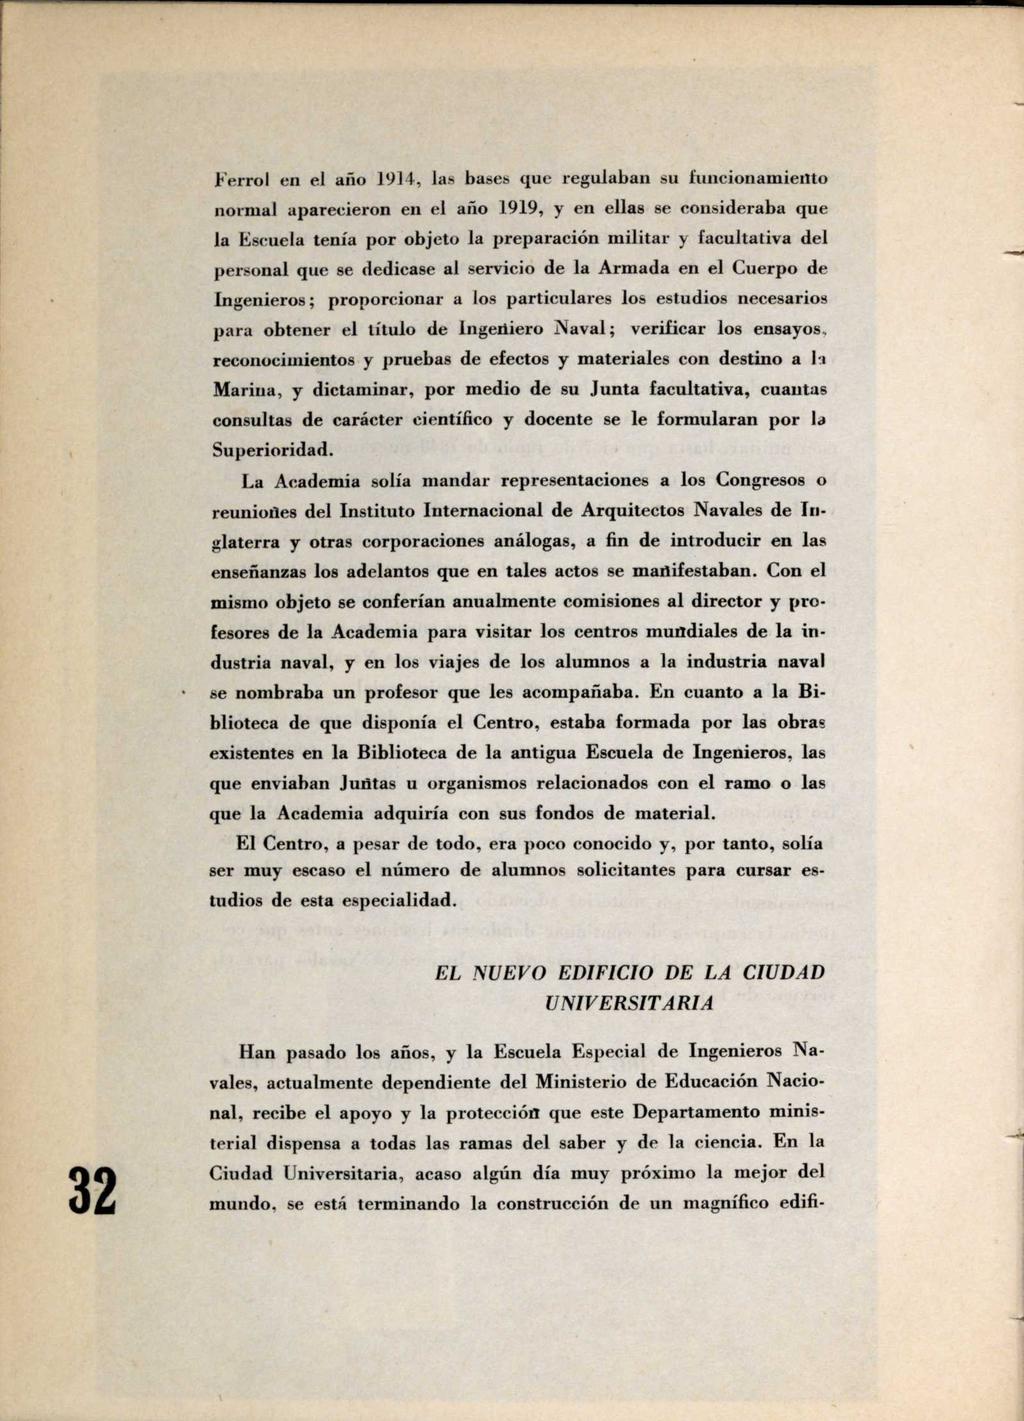 Ferrol en el ario 1914, las bases que regulaban su funcionamiento normal aparecieron en el año 1919, y en ellas se consideraba que la Escuela tenía por objeto la preparación militar y facultativa del